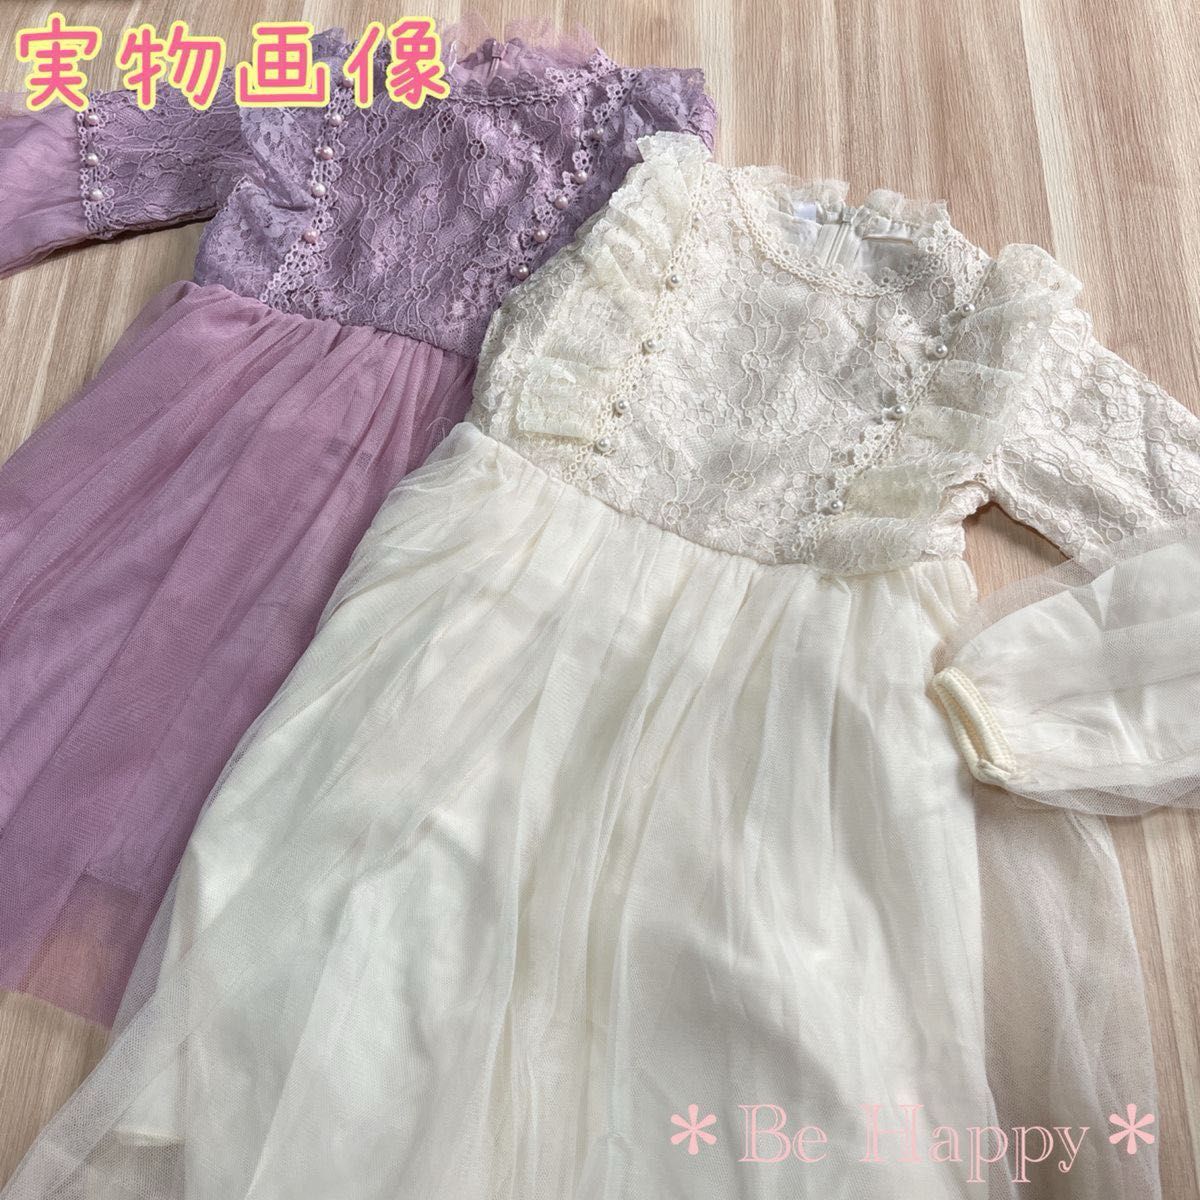 【新品】レースワンピース/アイボリー 110サイズ 女の子  キッズ ドレス フォーマル 結婚式 発表会